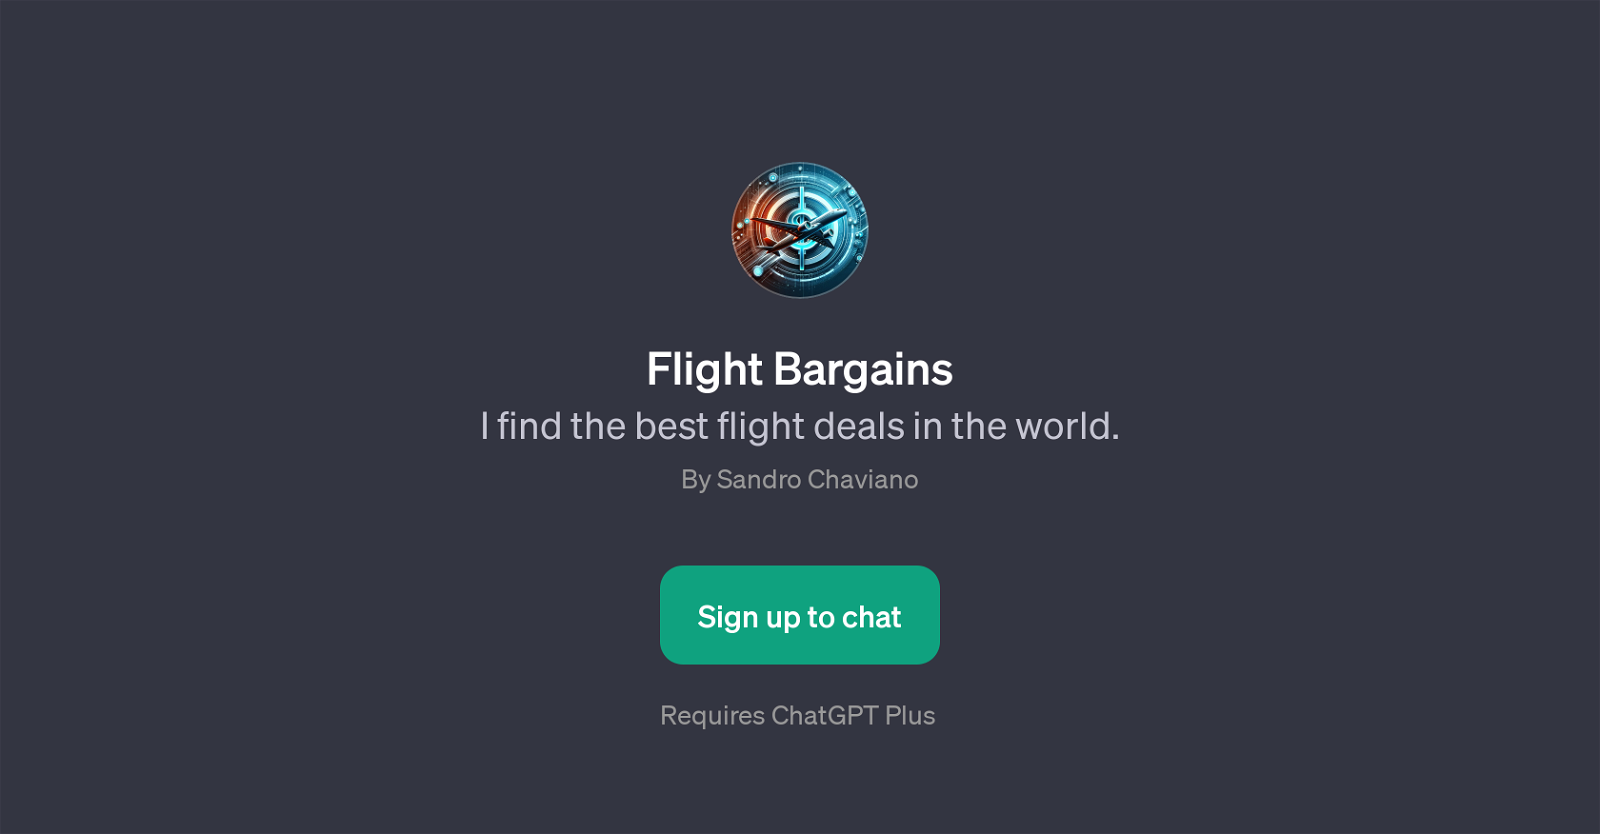 Flight Bargains website